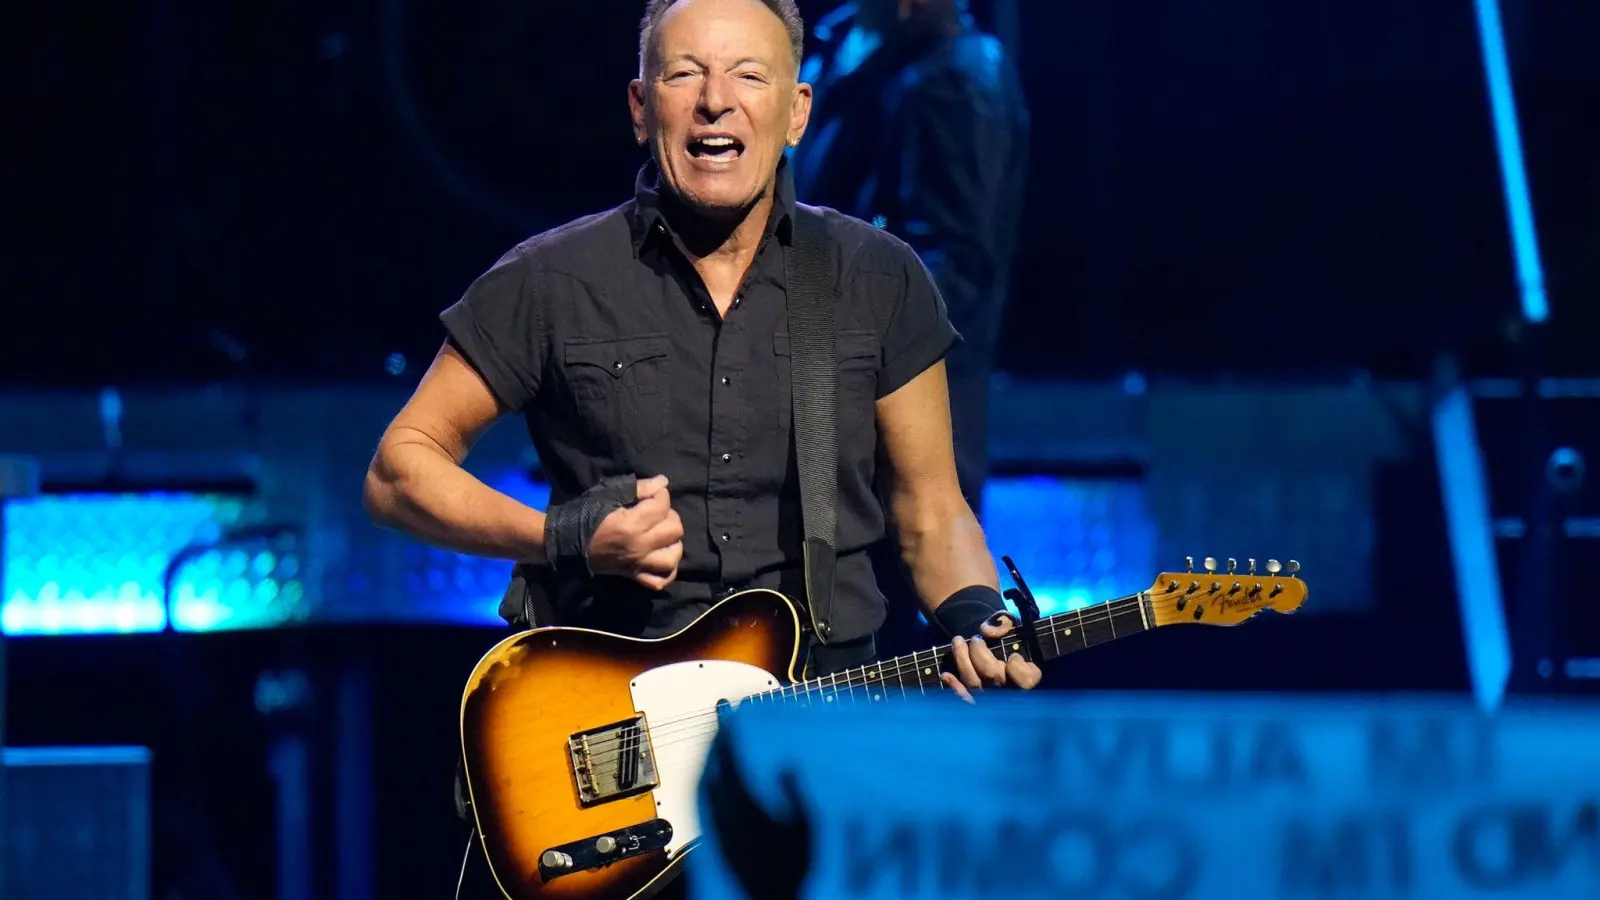 Sänger Bruce Springsteen bekommt eine ganz besondere Auszeichnung von US-Präsident Joe Biden. (Foto: Chris O'Meara/AP)